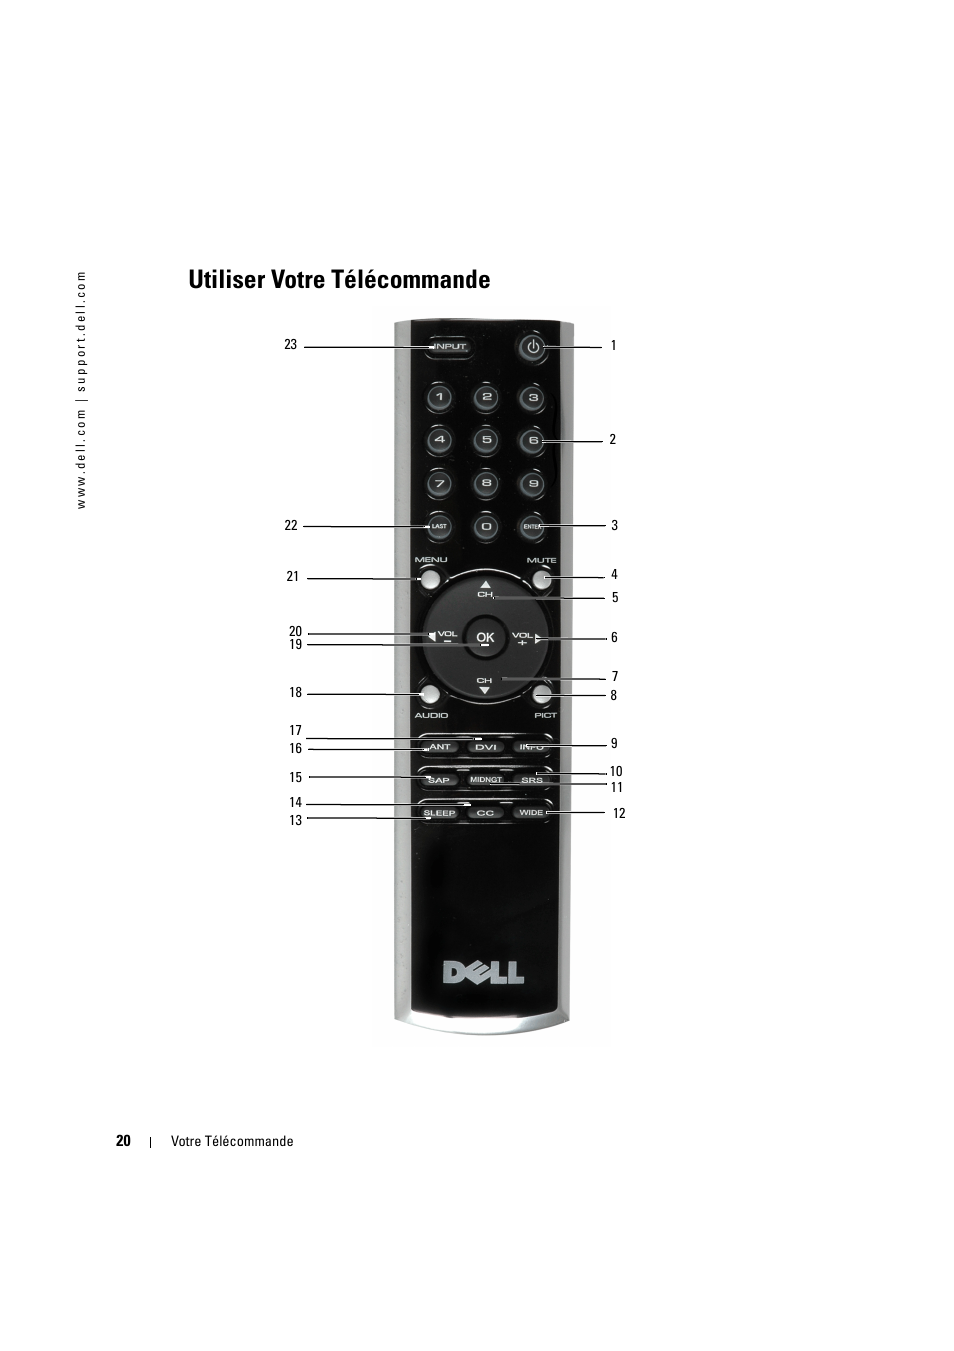 Utiliser votre télécommande | Dell LCD TV W2606C Manuel d'utilisation | Page 20 / 60